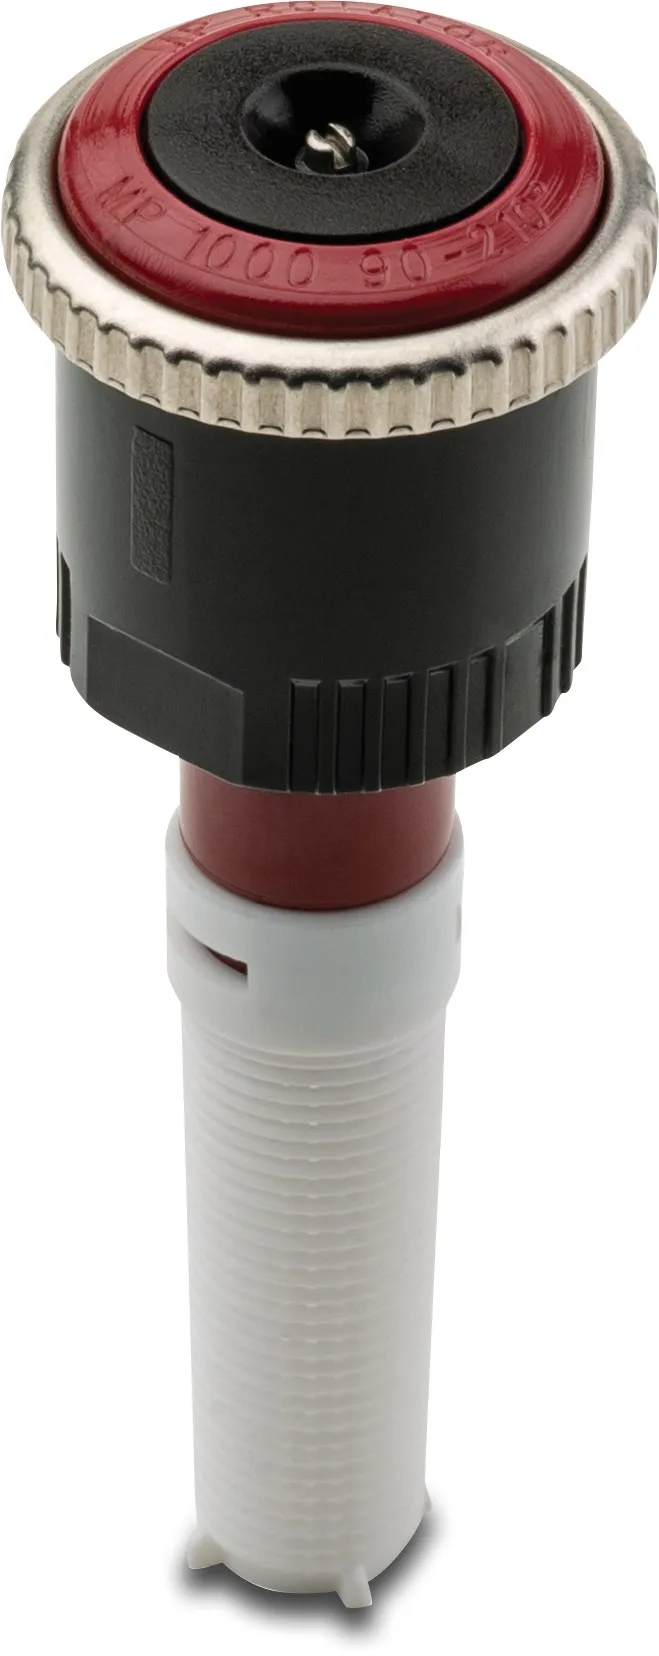 Hunter Rotator plastik indvendig gevind 90°-210° sort/mørkerød type MP1000-90